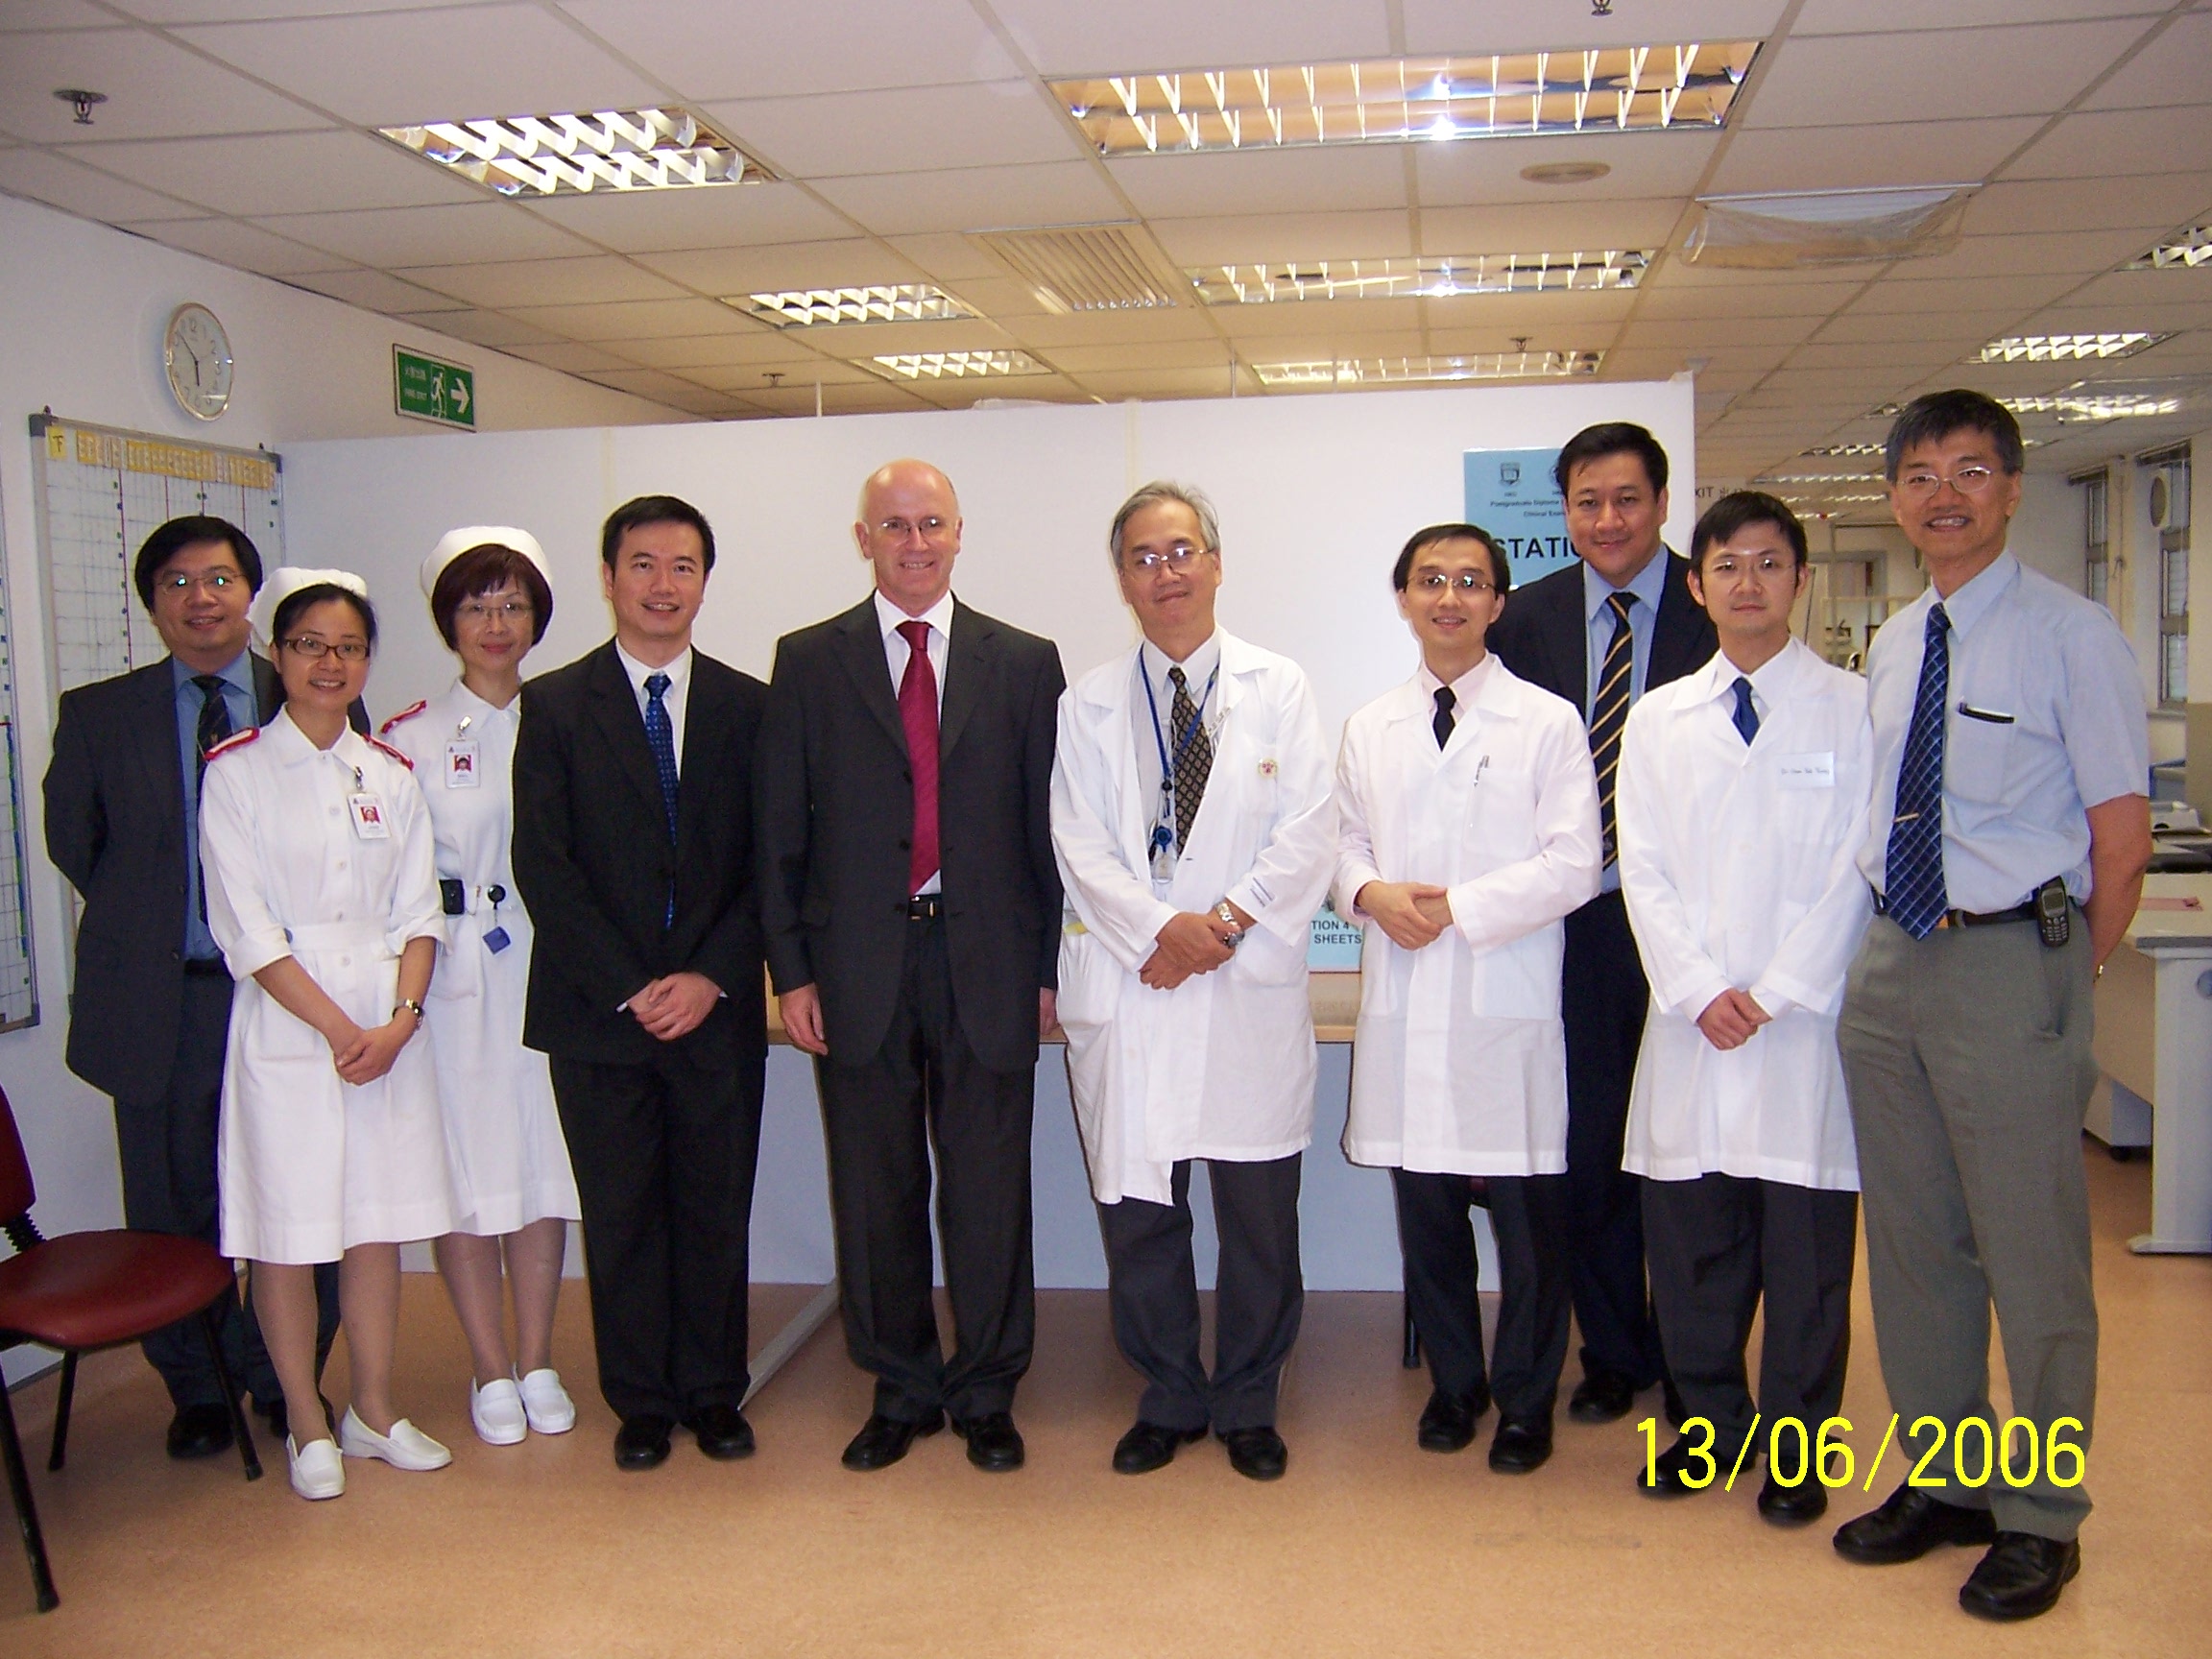 Local and External Examiners at PDCG Clinical Examination held at Kwong Wah Hospital 2006